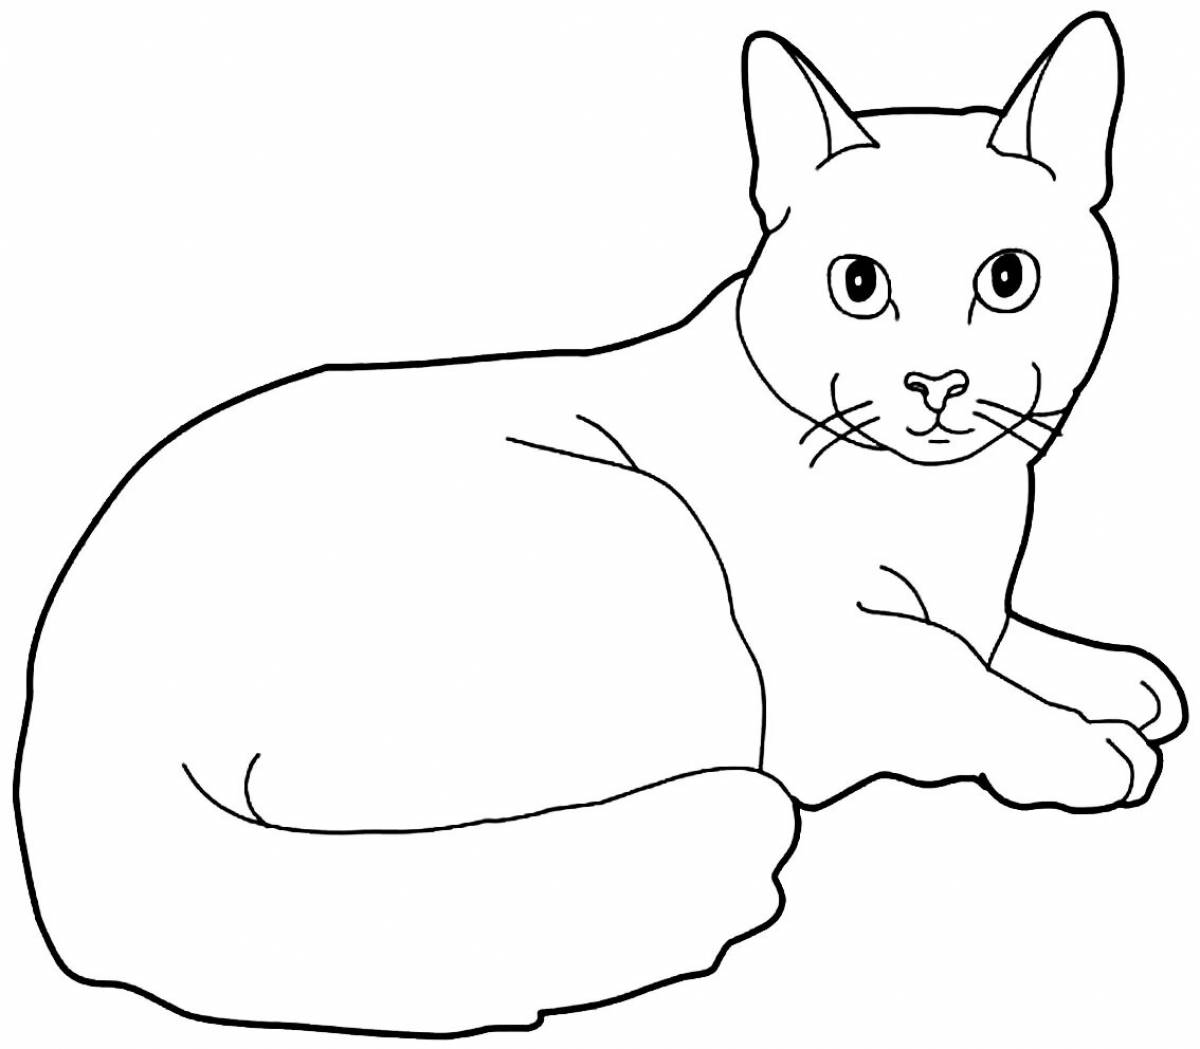 Раскраска сладкий карандашный кот